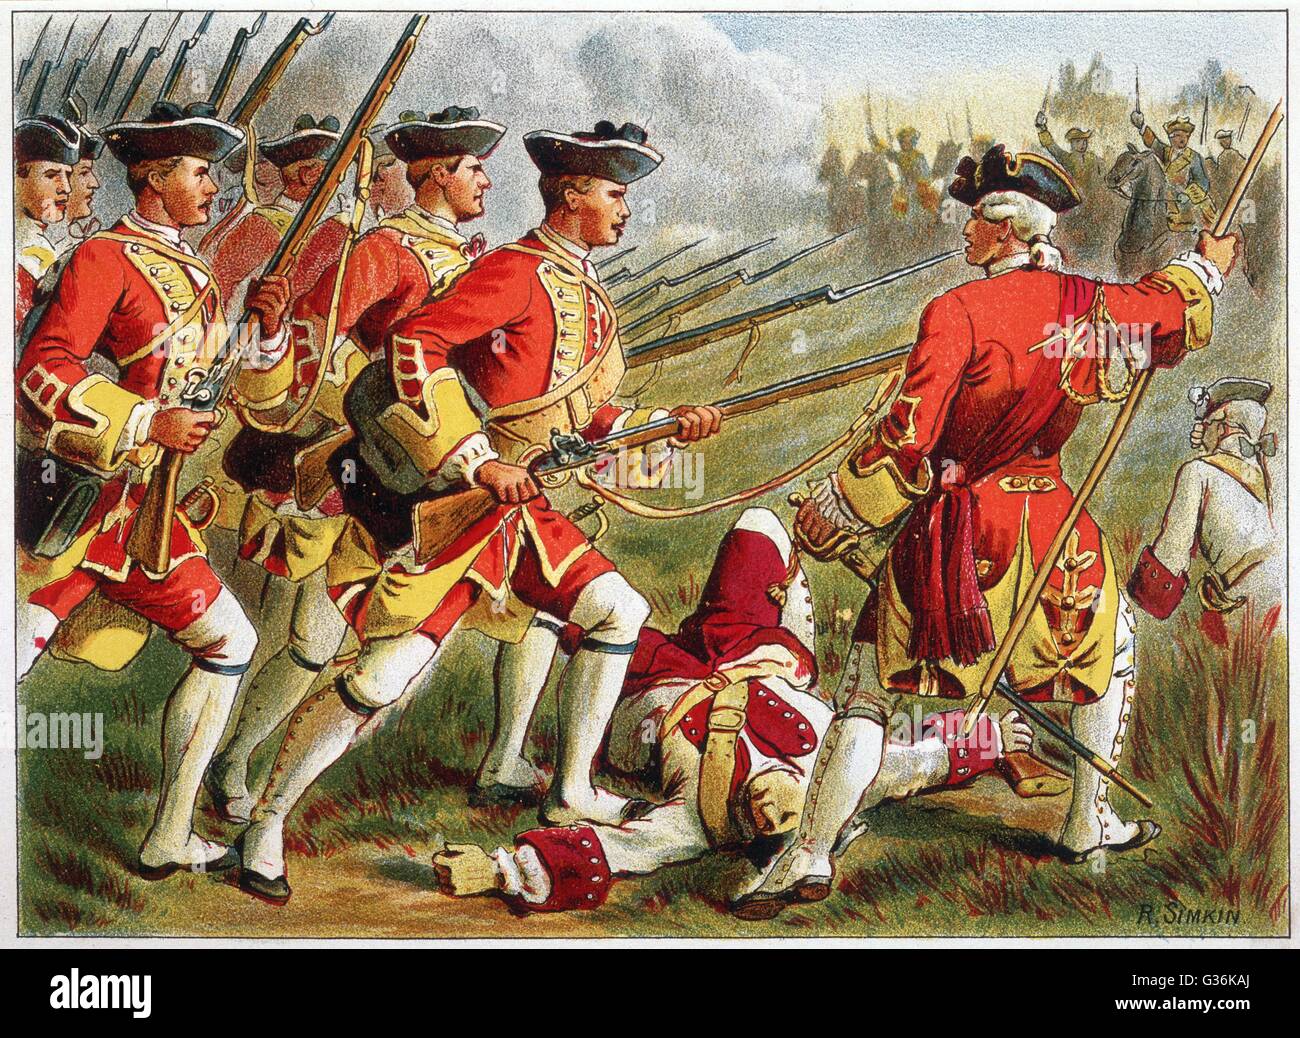 Военные 1800 годов. Армия Великобритании 18 века. Солдаты британской армии 18 века. Солдаты семилетней войны. Британские войска 18 века.